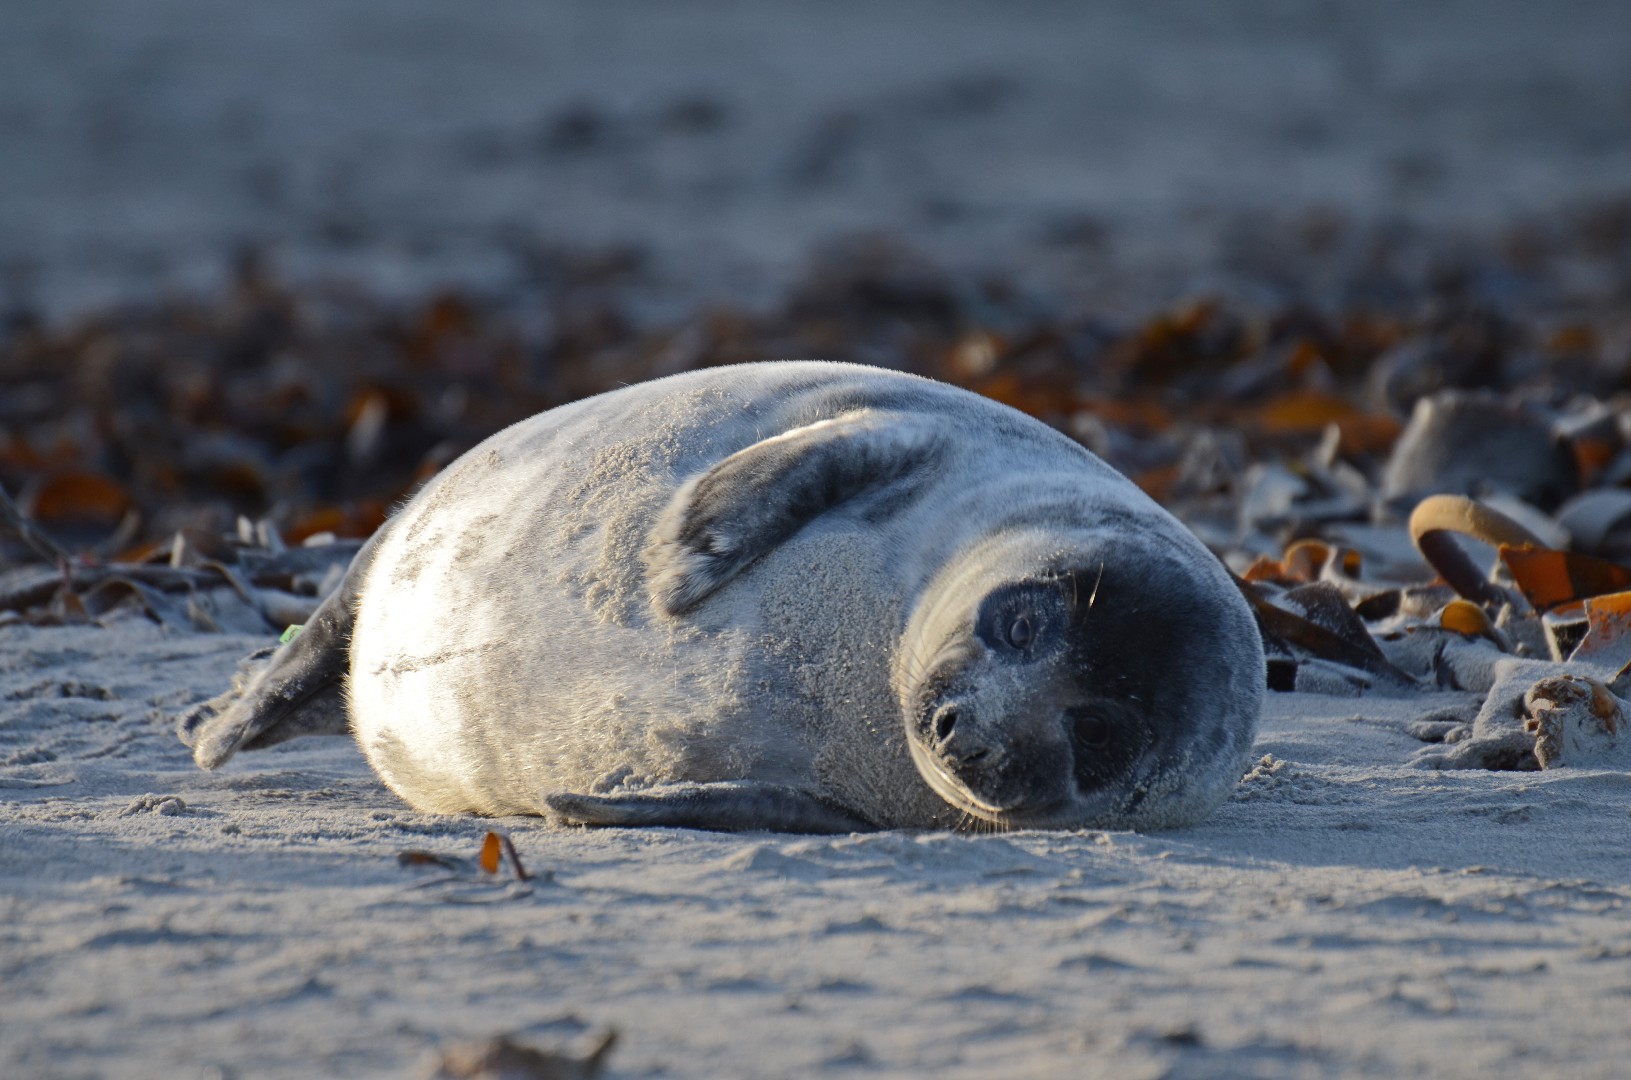 Mediterranean monk seal (Phoca)